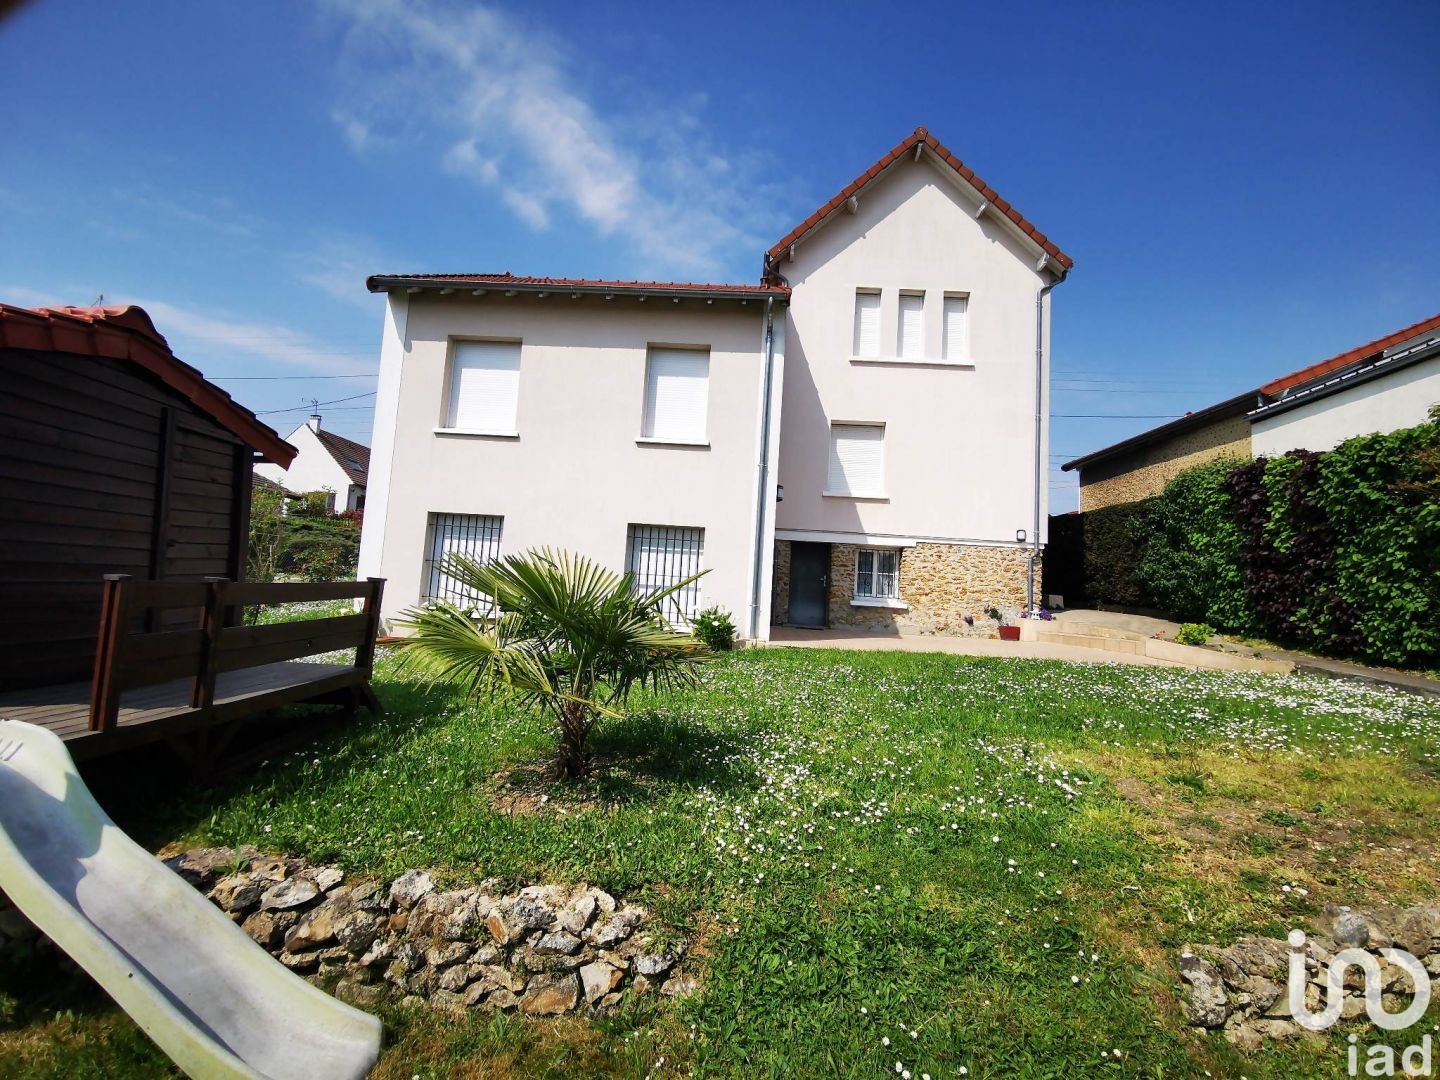 Vente maison 132 m² Gagny (93220) - 132 m² - 495.000 €